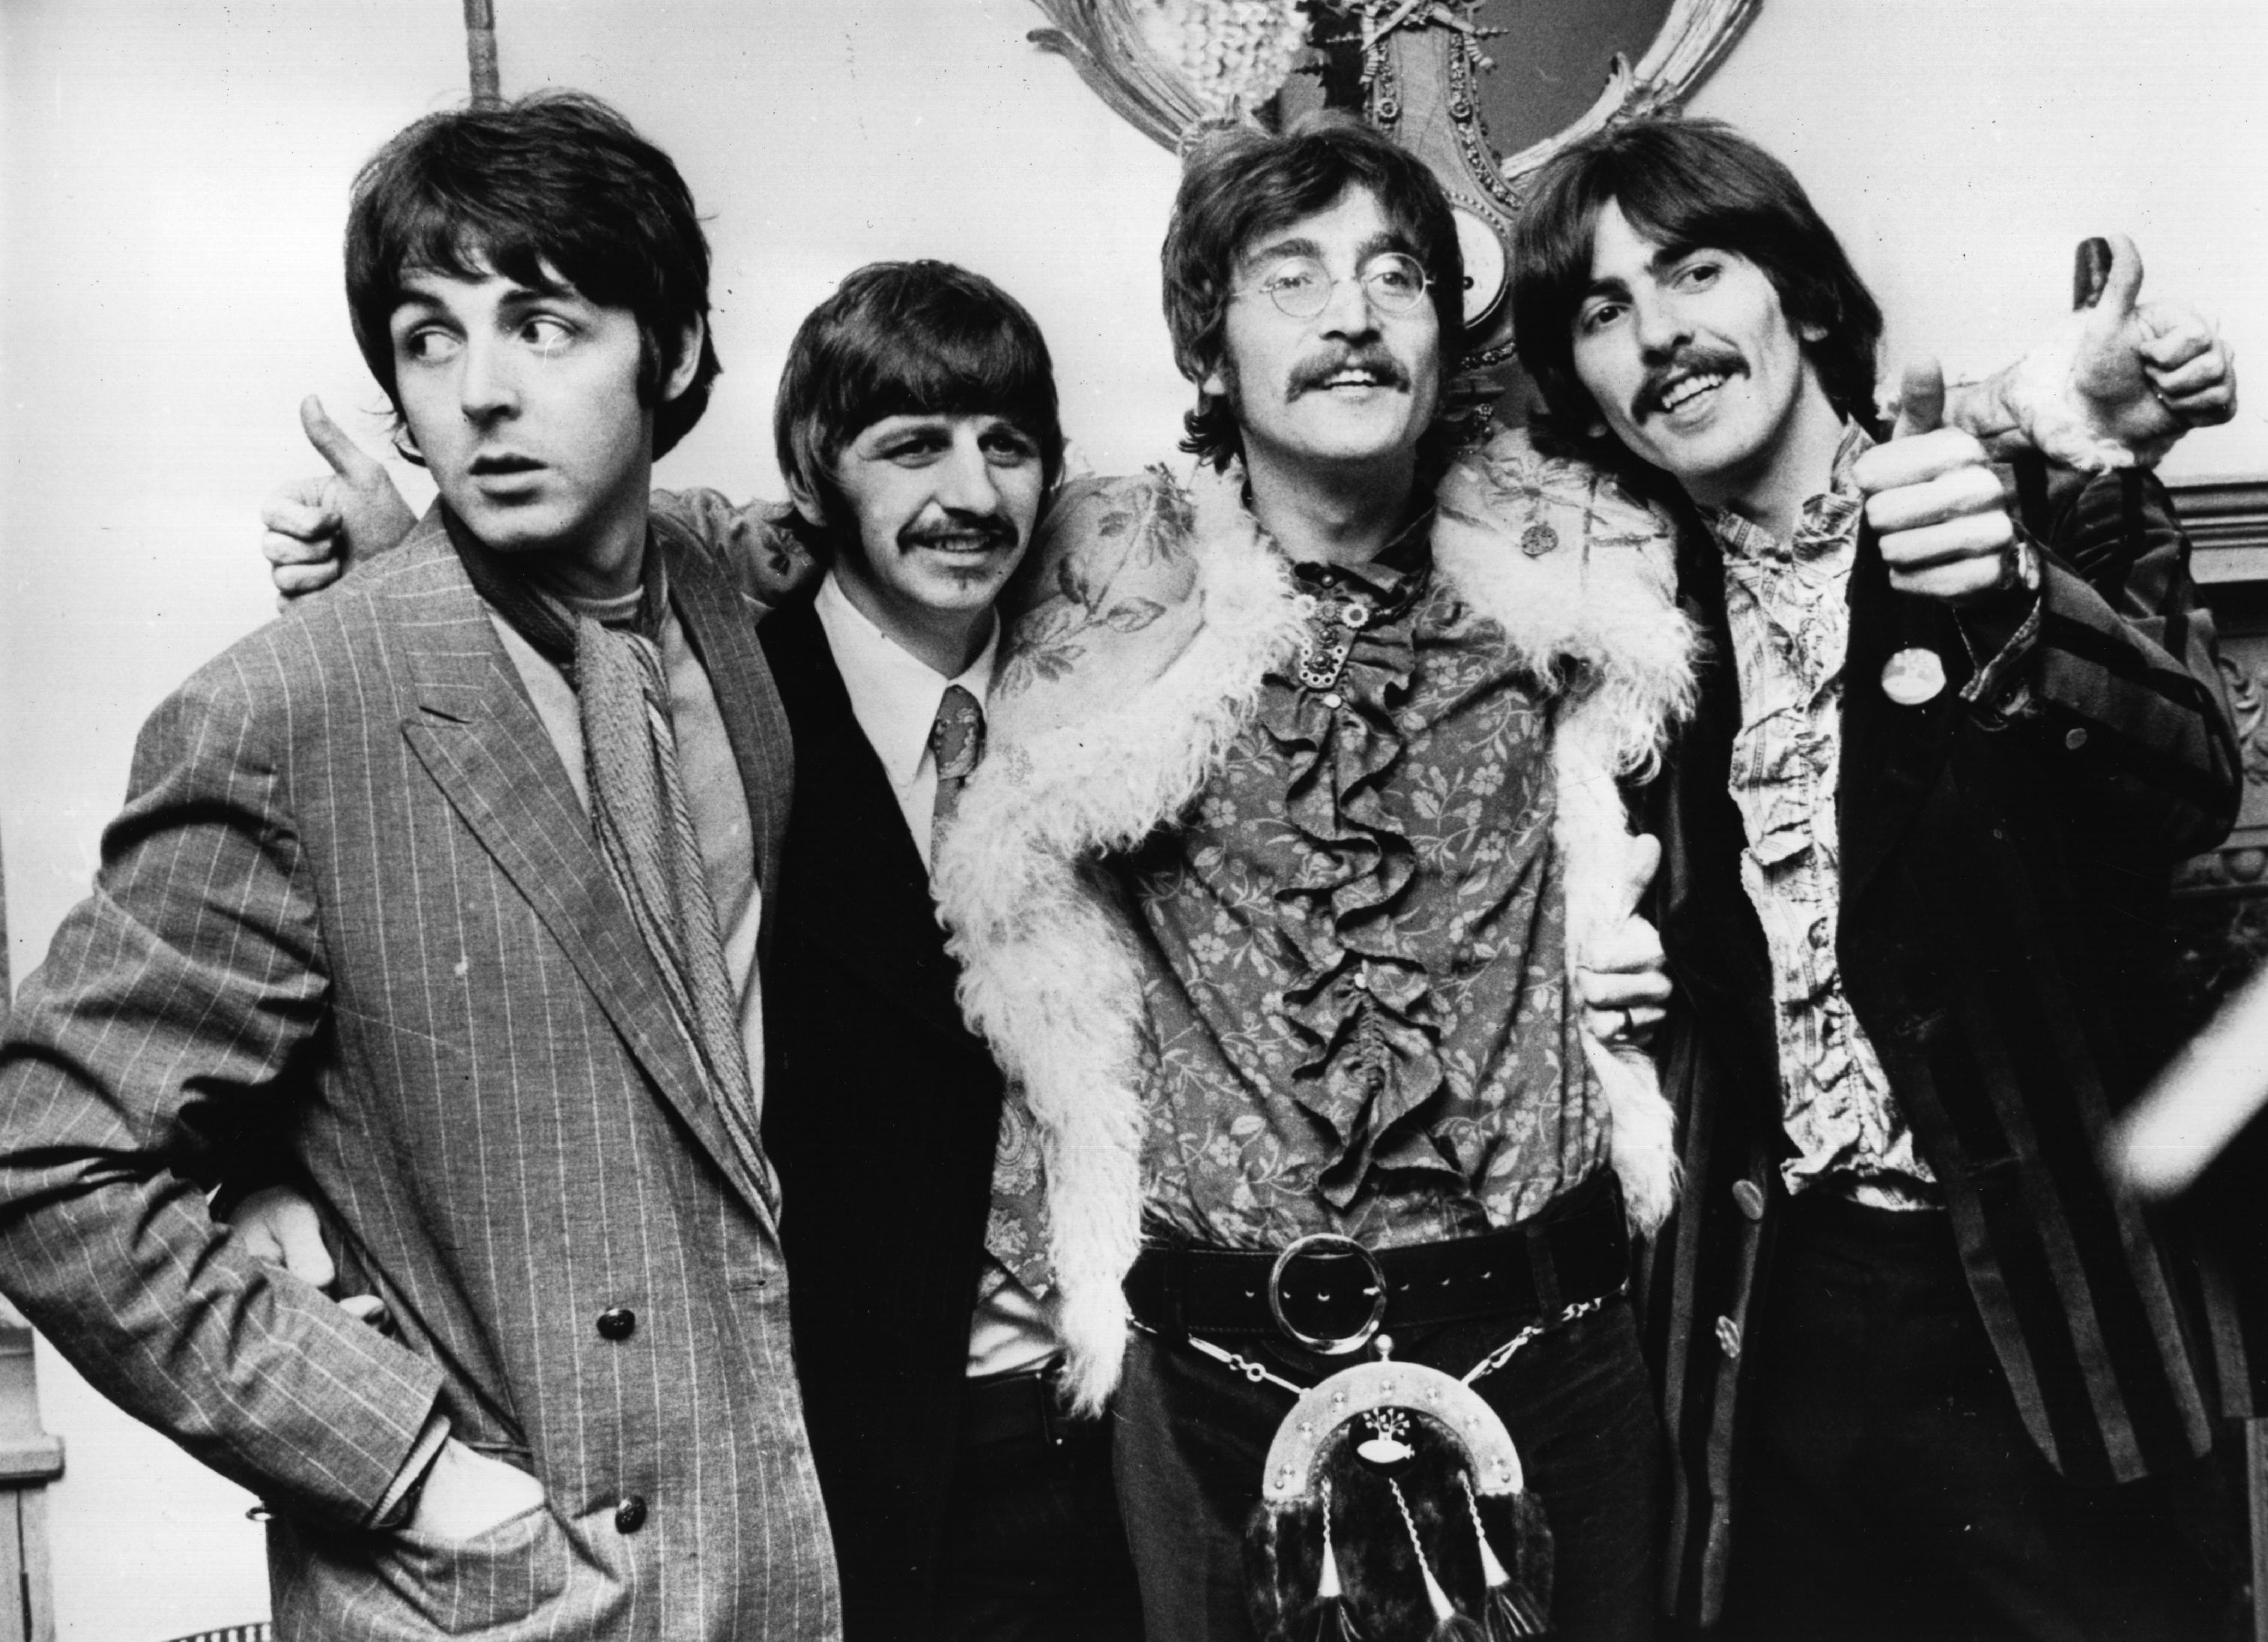 The Beatles’ Paul McCartney, Ringo Starr, John Lennon, and George Harrison standing